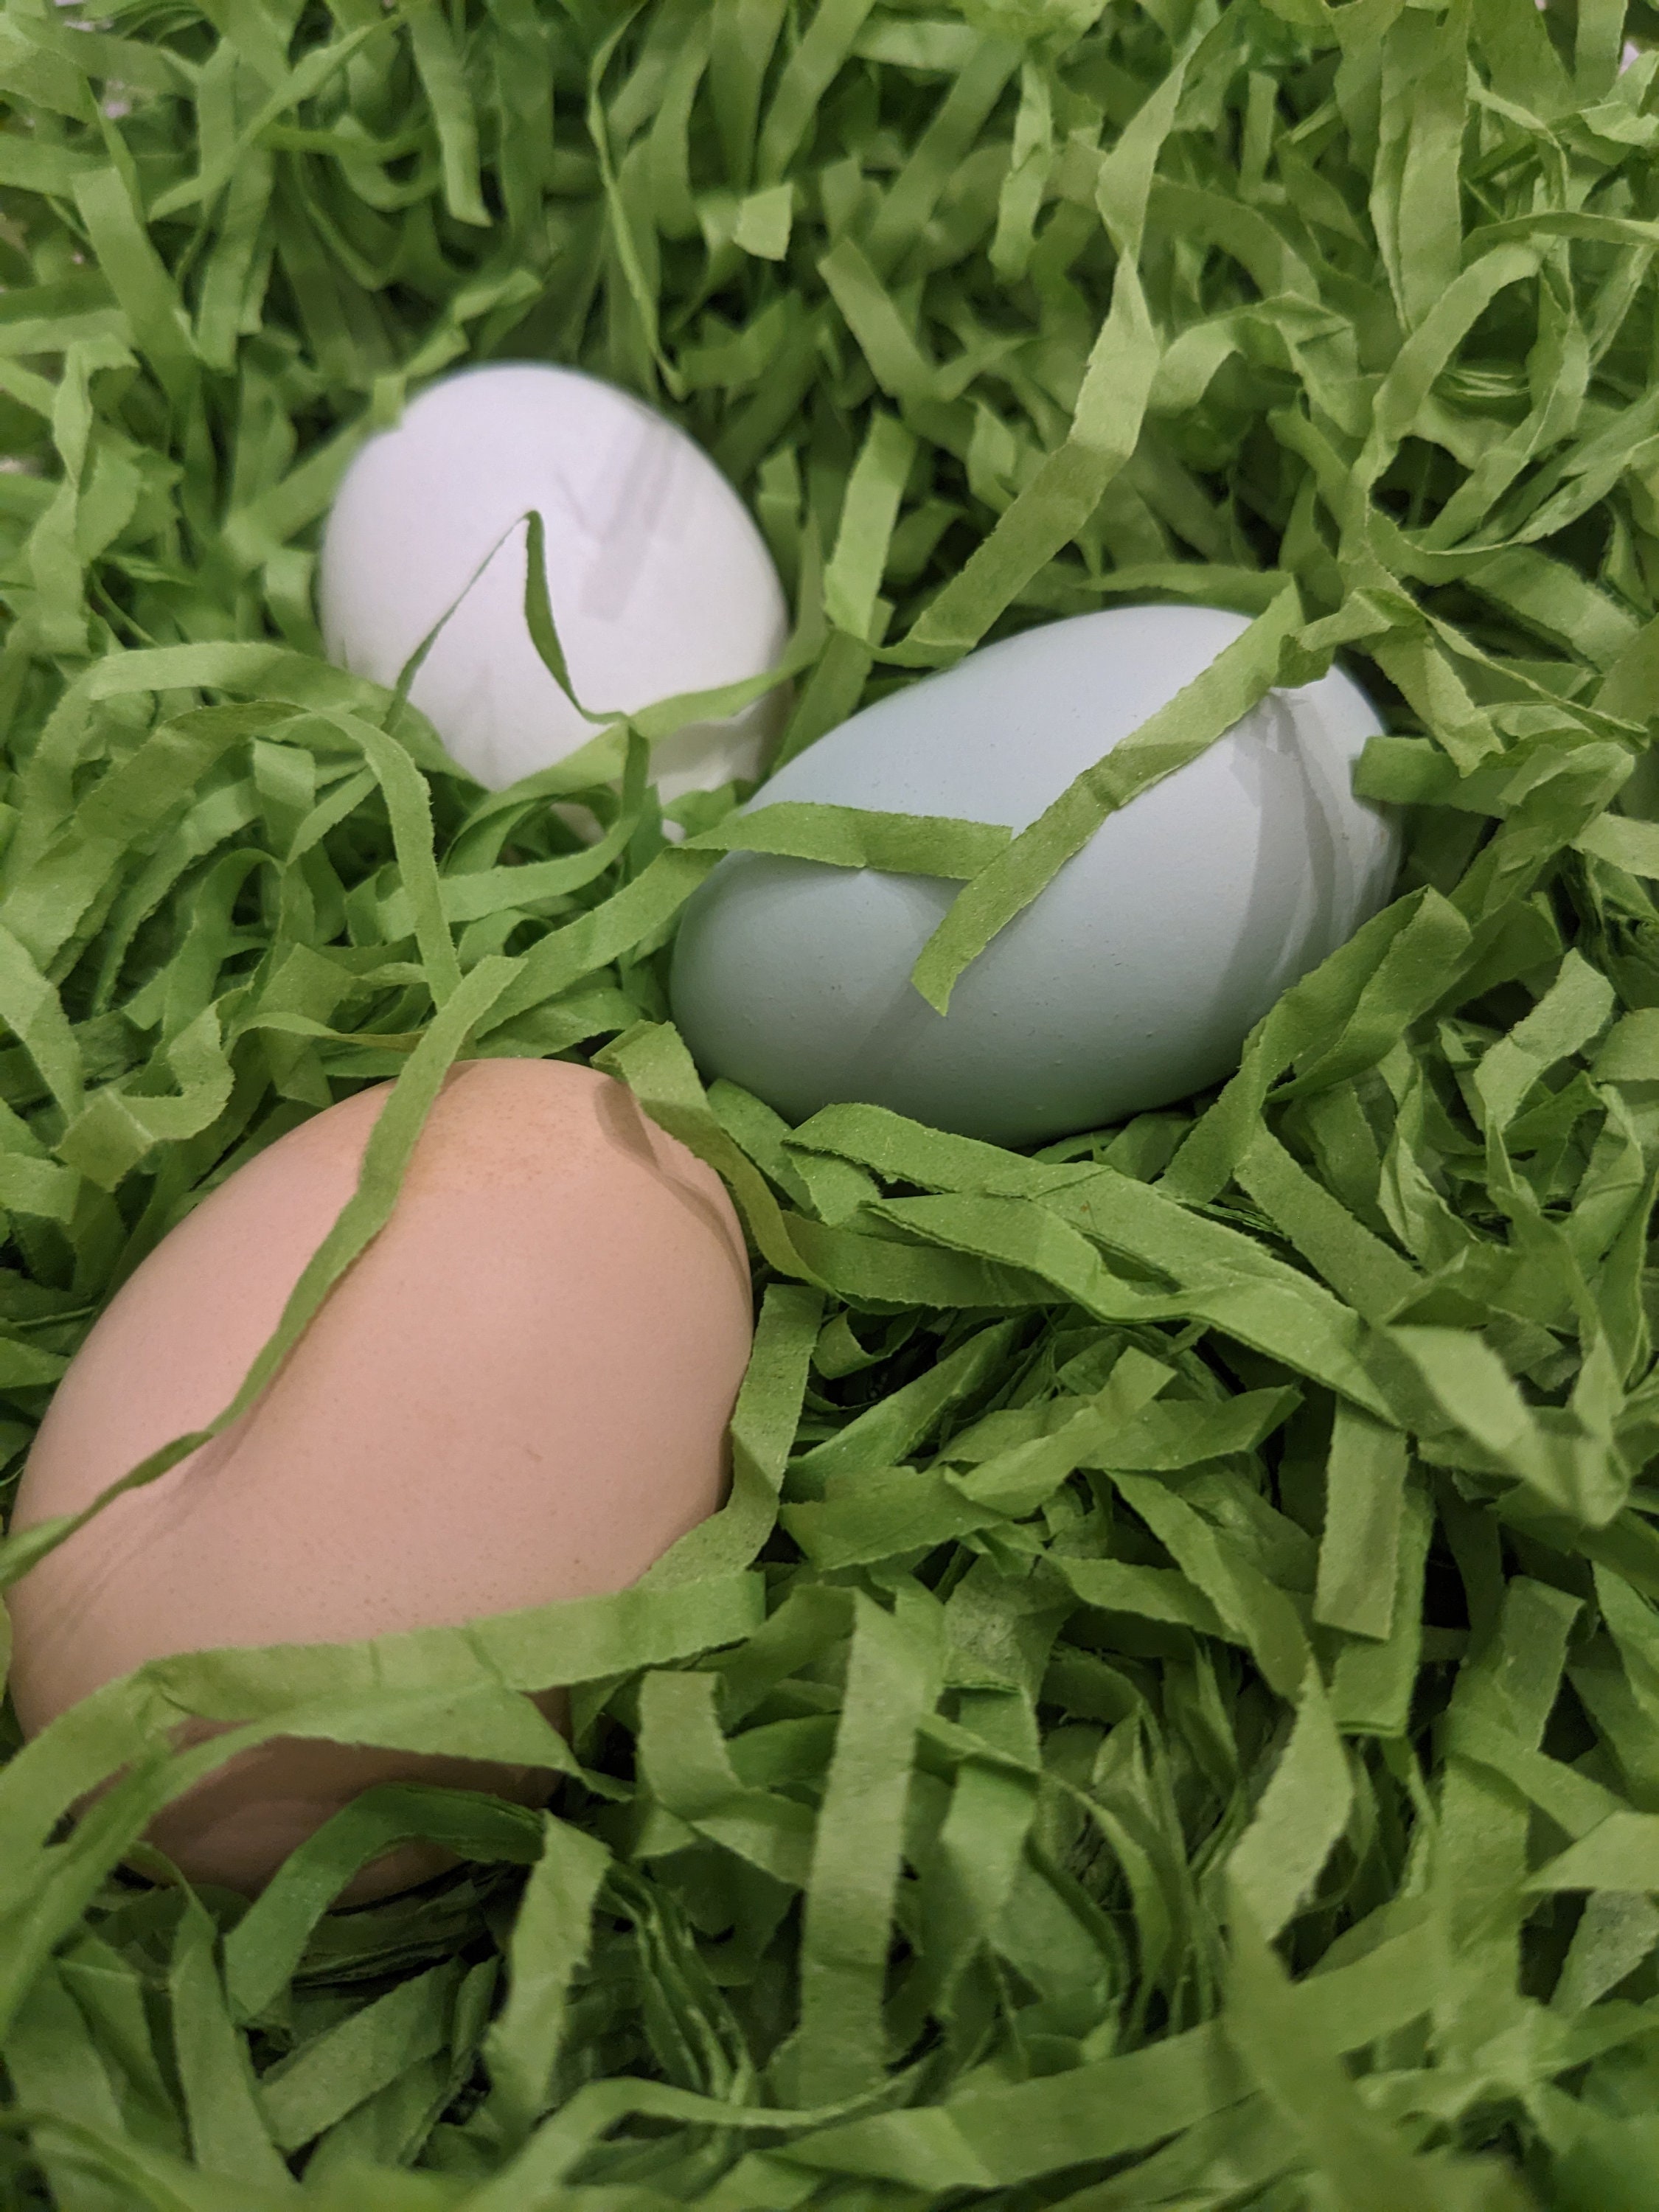 Jremreo 6 Colors 25oz (720g) Easter Grass Basket Filler Bulk, Assorted Crinkle Cut Paper Shred Filler for Easter Egg Hunt Decor, Gift Wrapping 